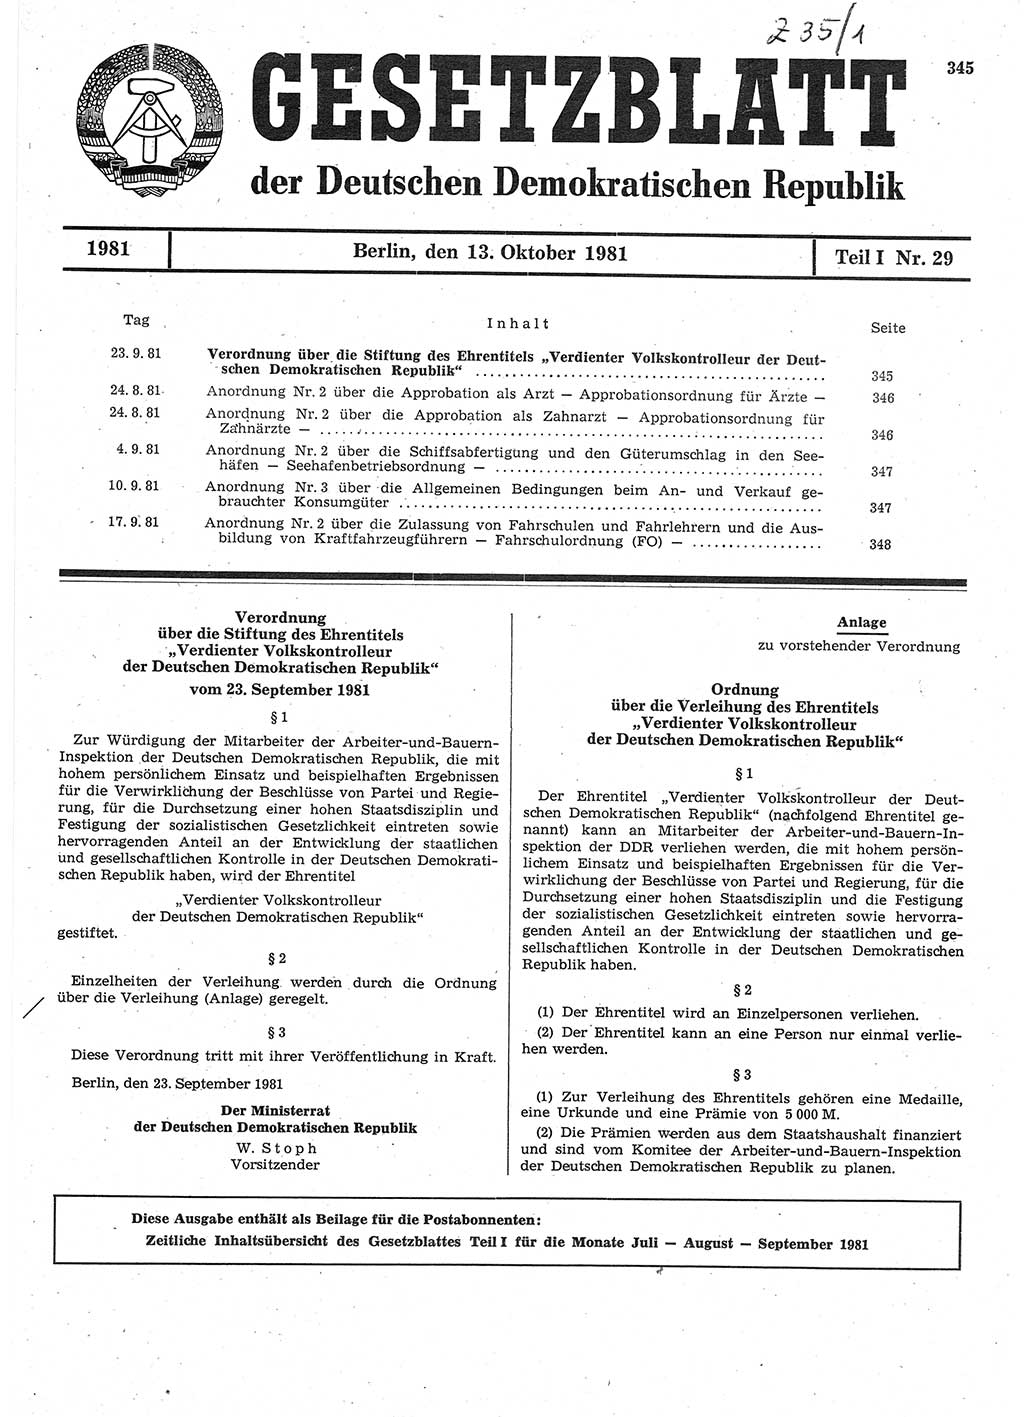 Gesetzblatt (GBl.) der Deutschen Demokratischen Republik (DDR) Teil Ⅰ 1981, Seite 345 (GBl. DDR Ⅰ 1981, S. 345)